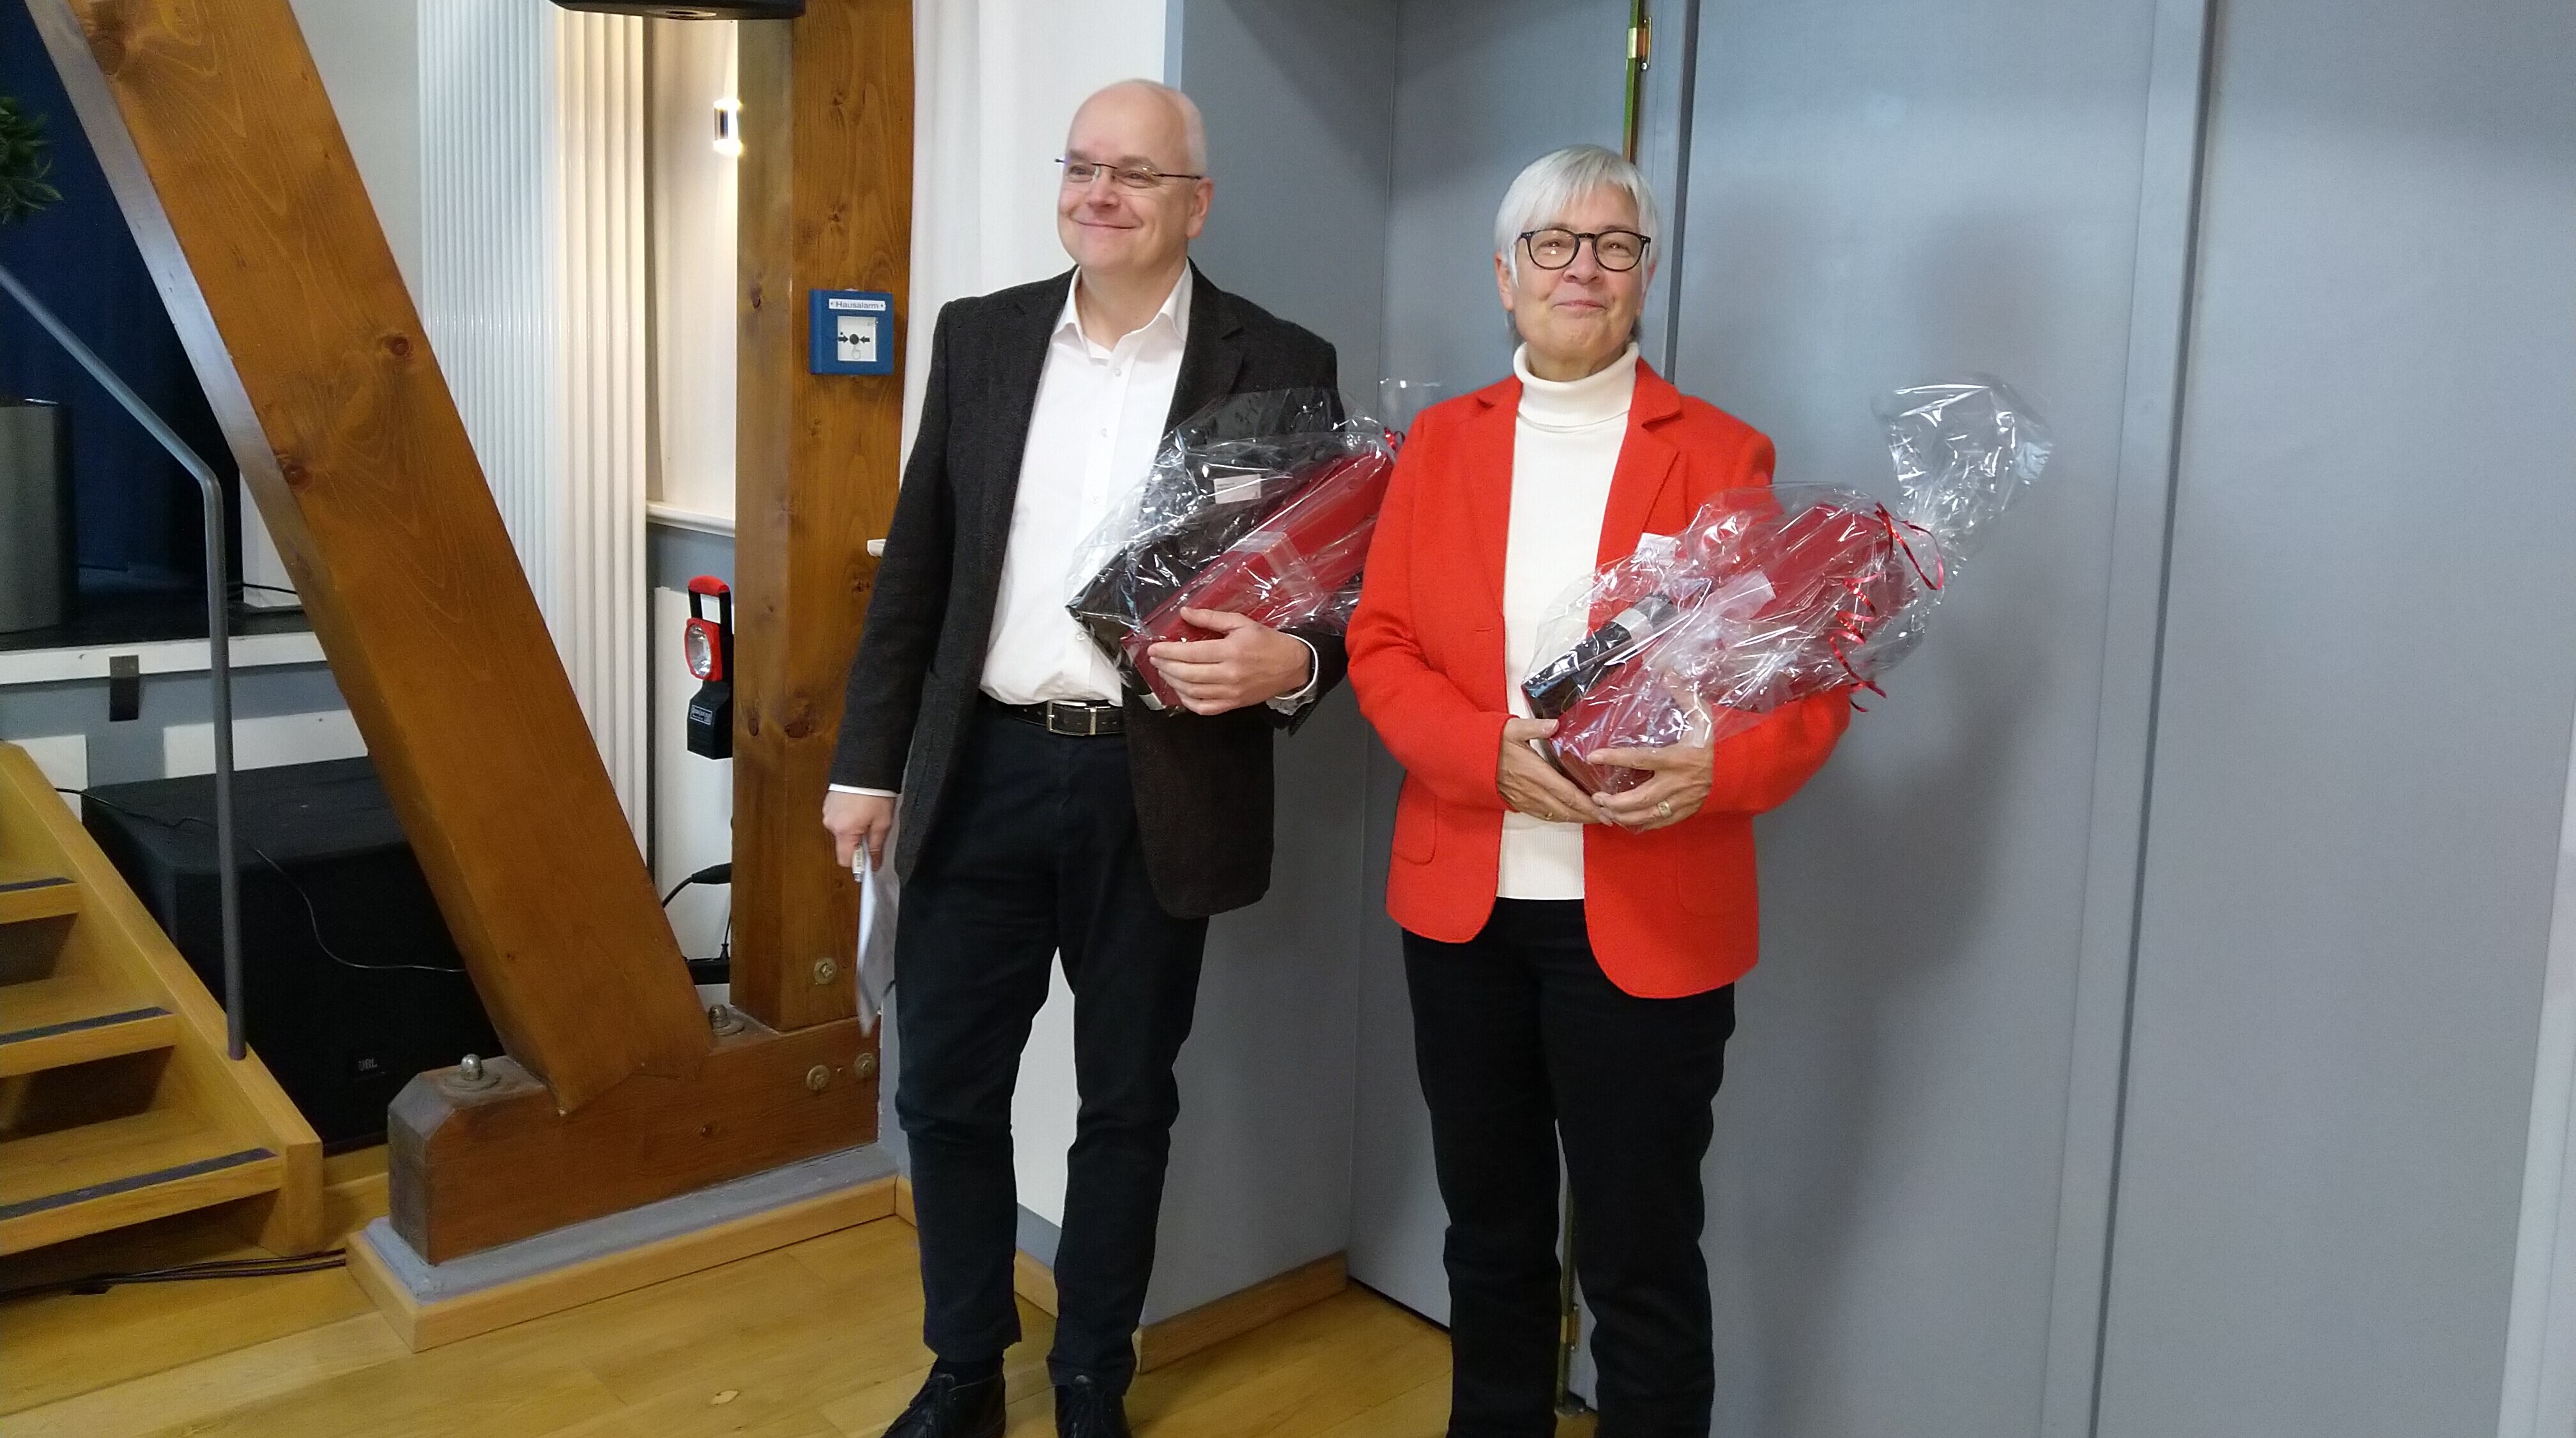 Brigitte Kohlhaas und Holger Piwowar, die langjährigen Rechnungsprüfenden des Tourismus NRW, mit Präsenten in der Hand 